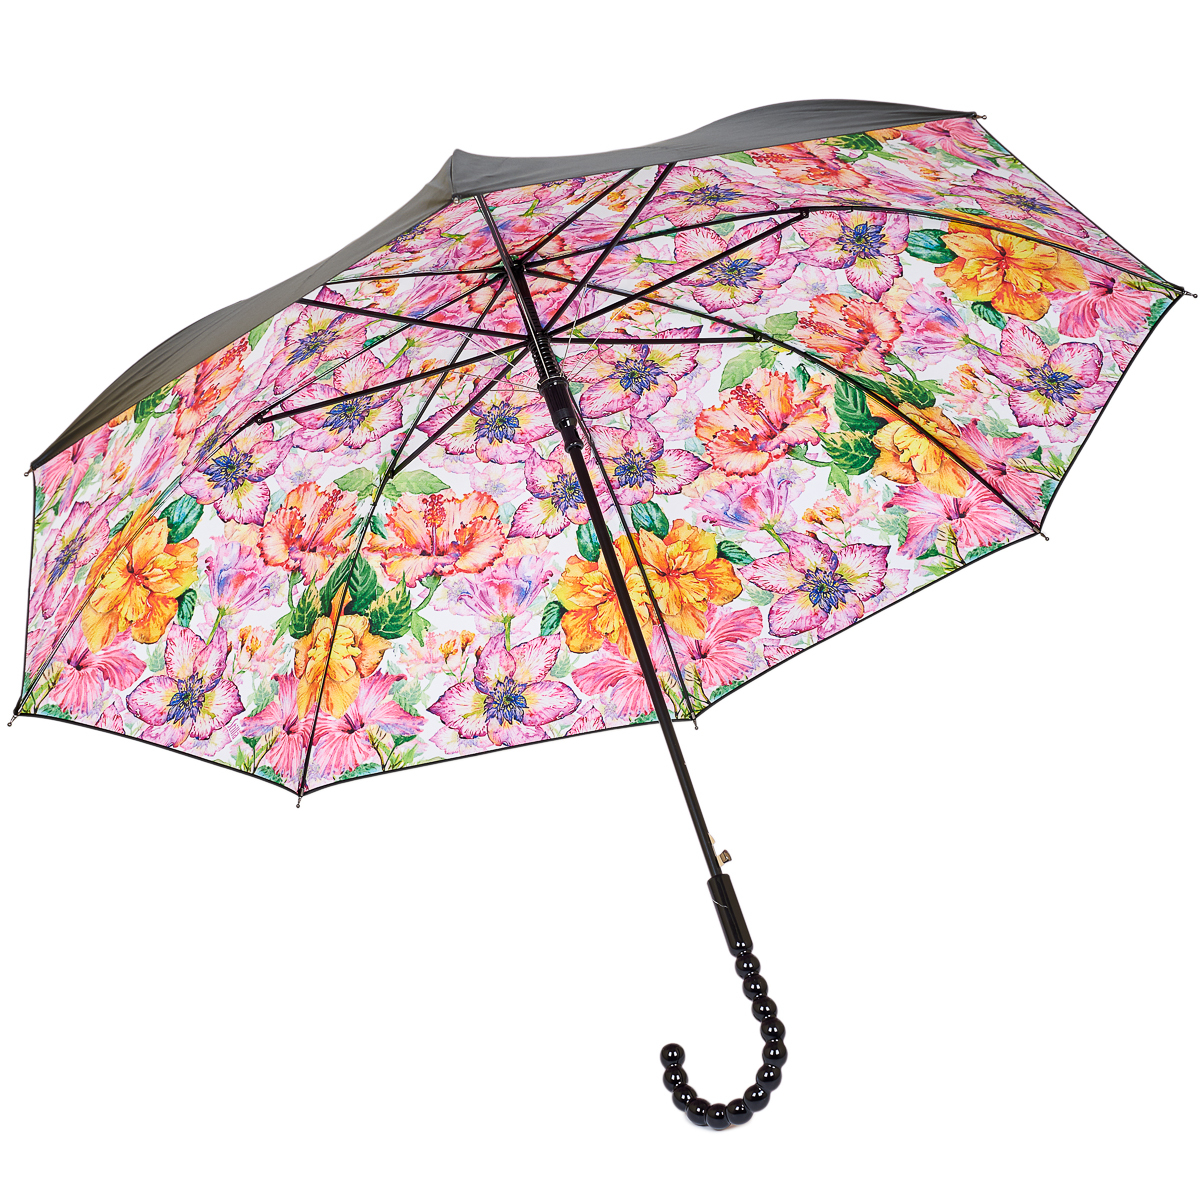 Составляющие зонтика